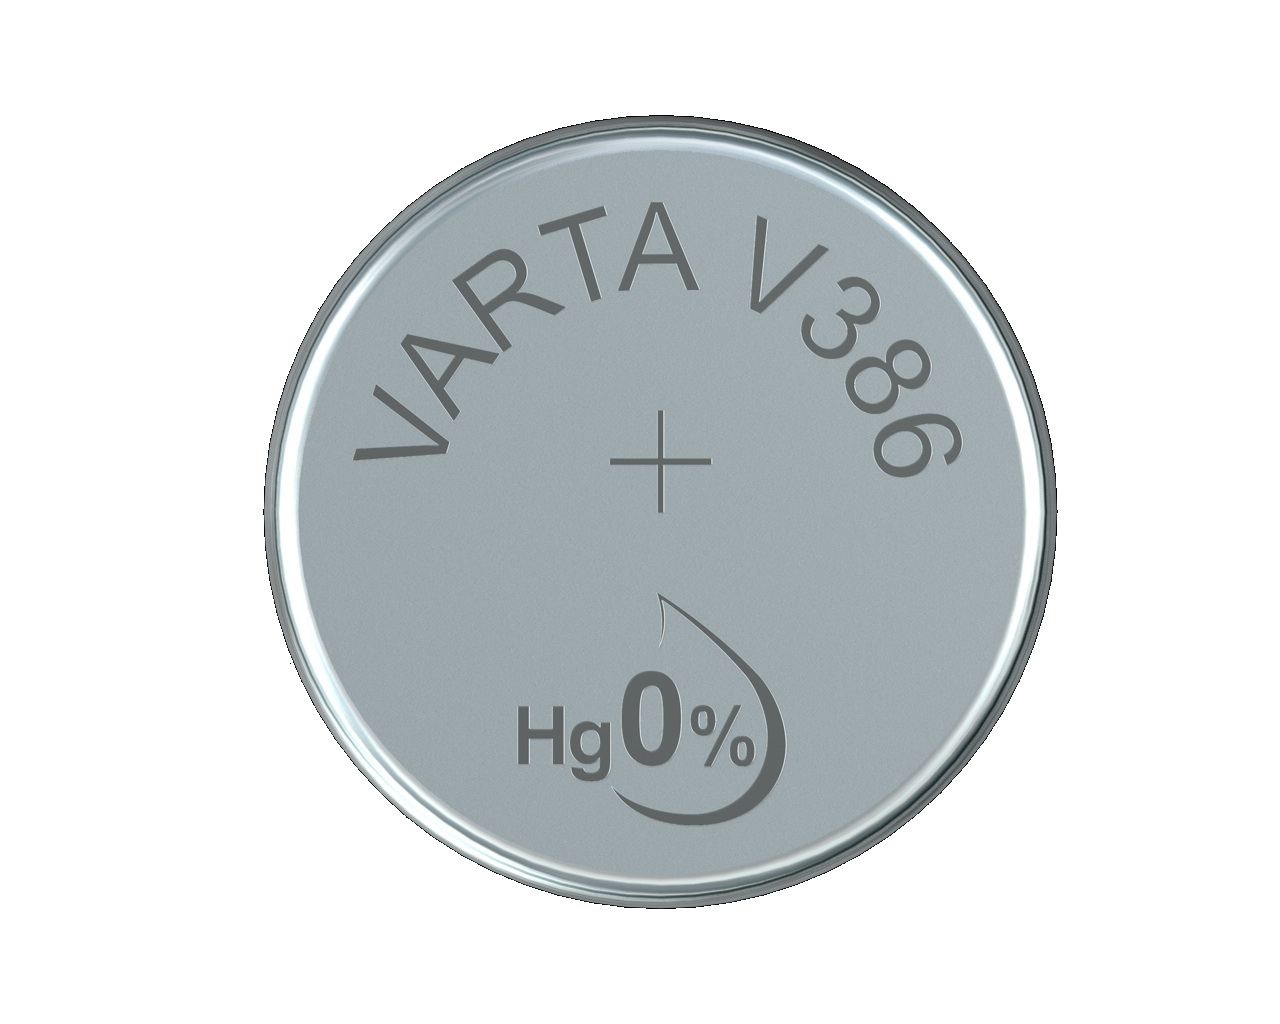 Varta Watch V386 SR43 1,55 V Uhrenbatterie High Drain 115mAh (1 Blister)